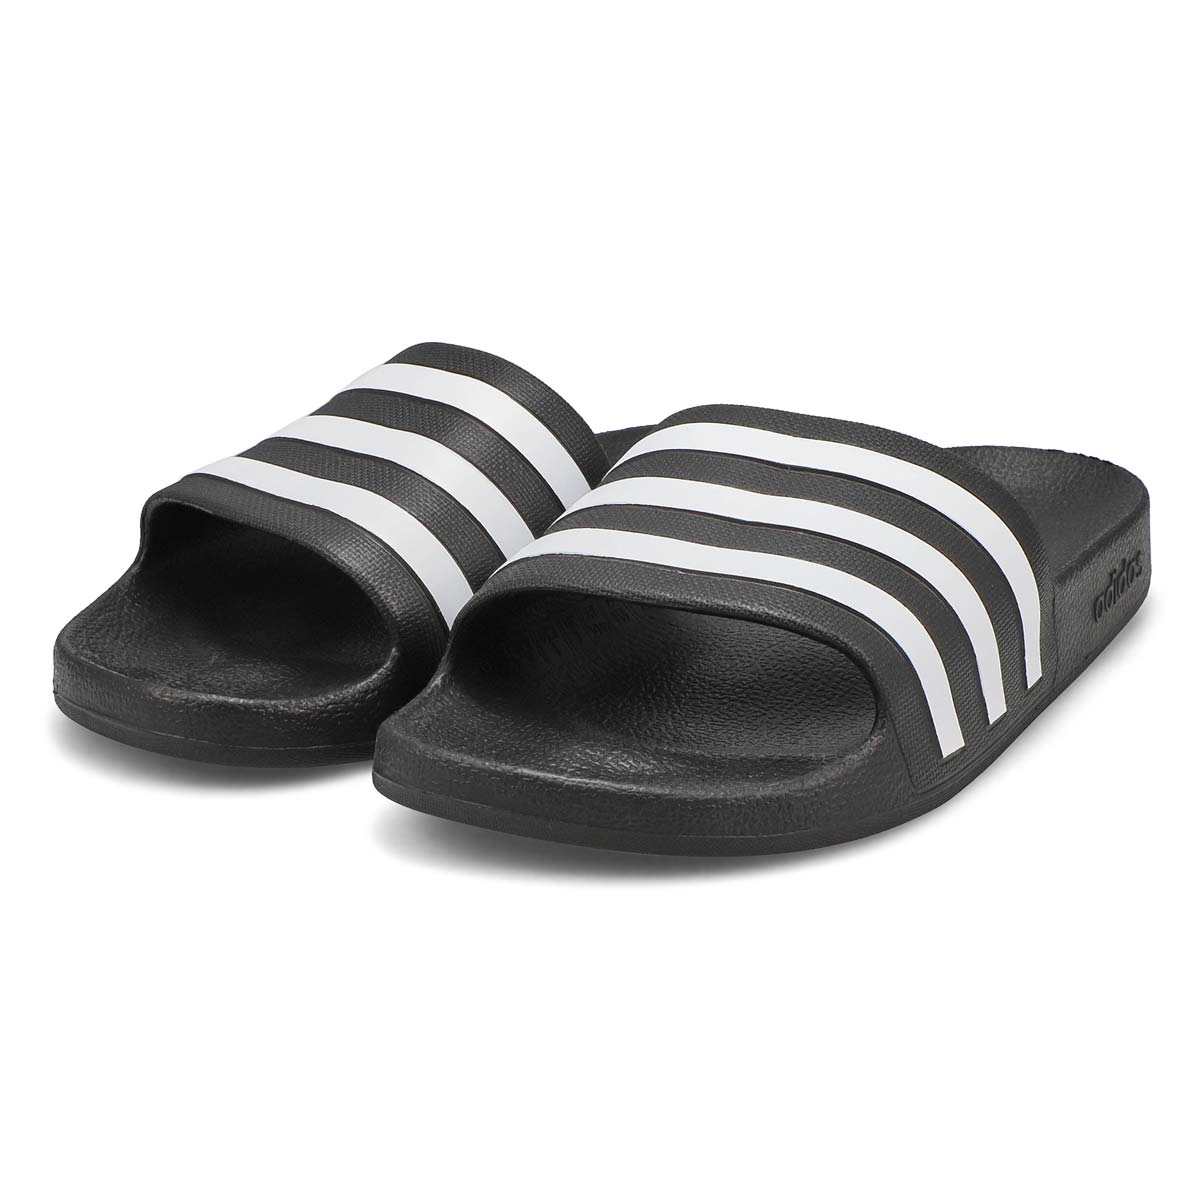 Women's Adilette Aqua Slide Sandal - Black/White